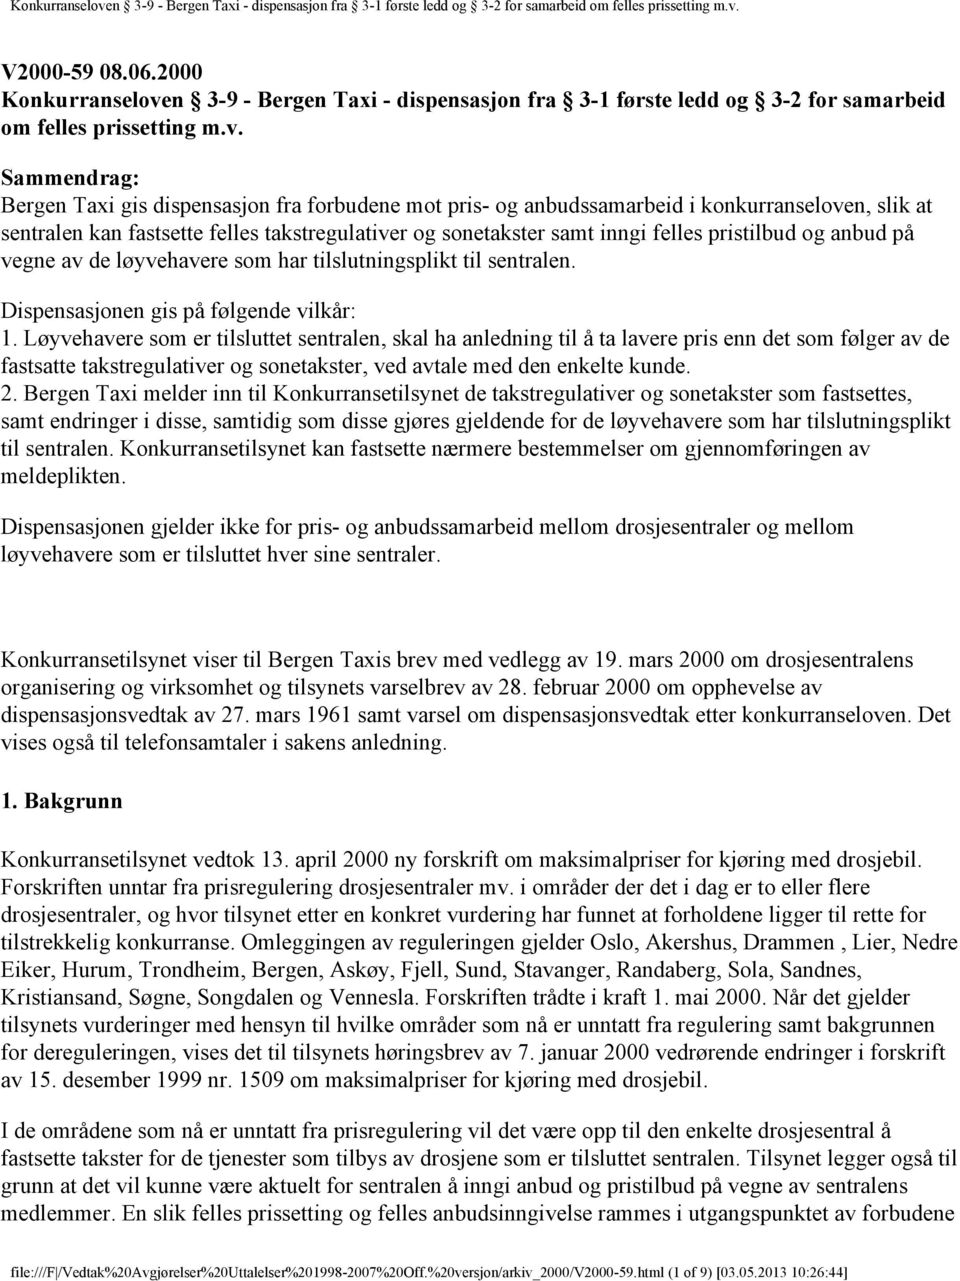 Sammendrag: Bergen Taxi gis dispensasjon fra forbudene mot pris- og anbudssamarbeid i konkurranseloven, slik at sentralen kan fastsette felles takstregulativer og sonetakster samt inngi felles